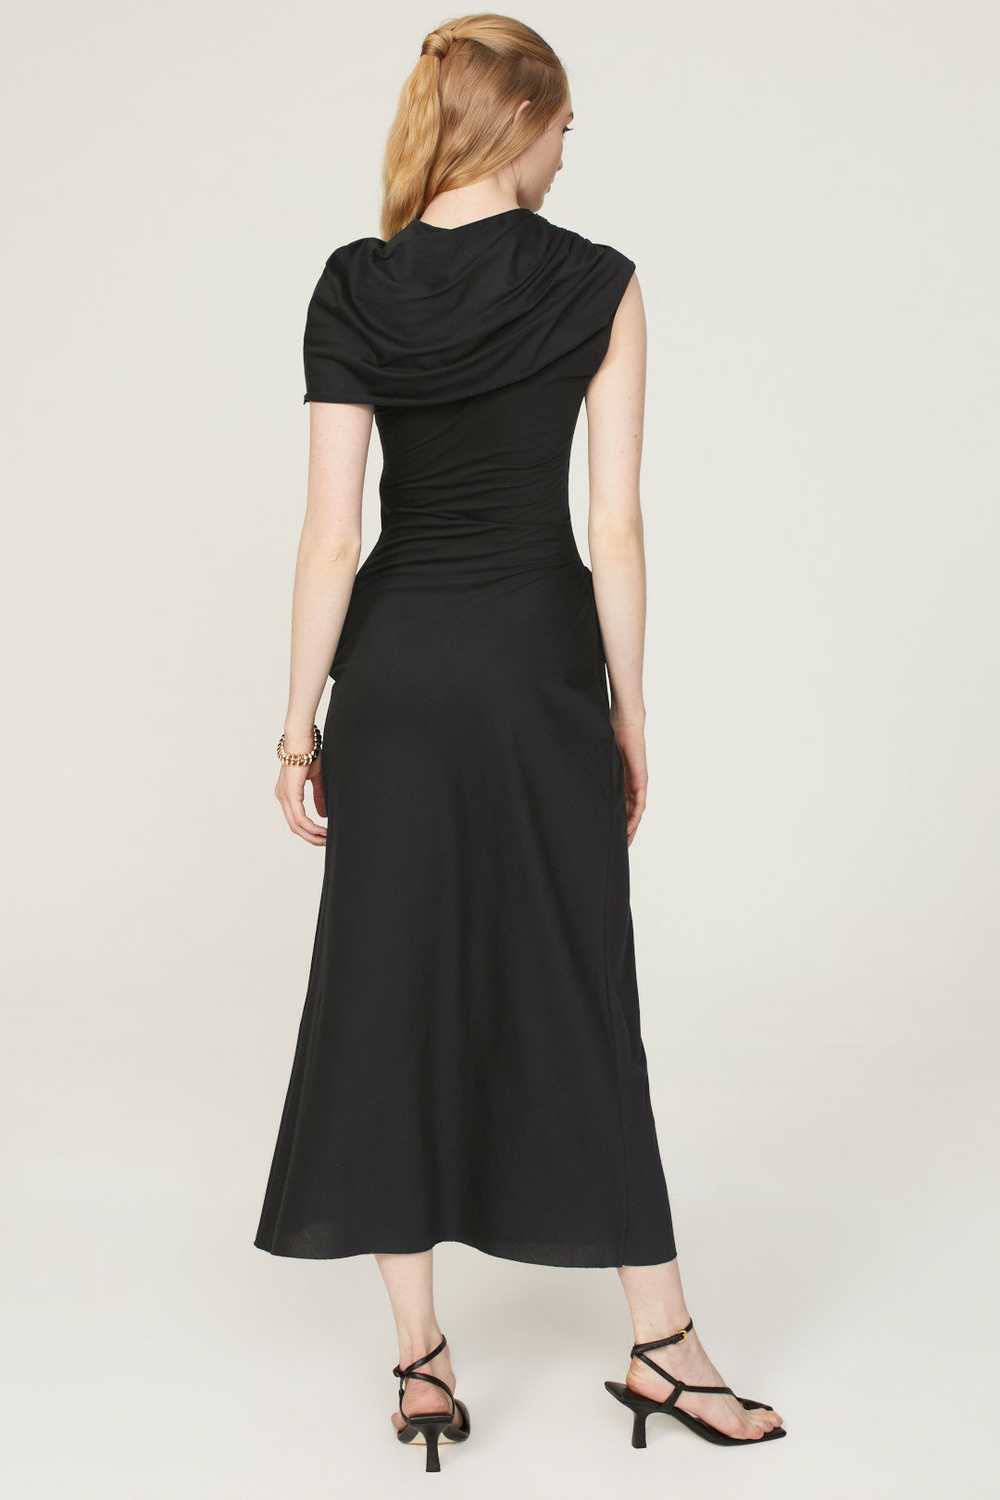 Marina Moscone Sarong Dress - image 3